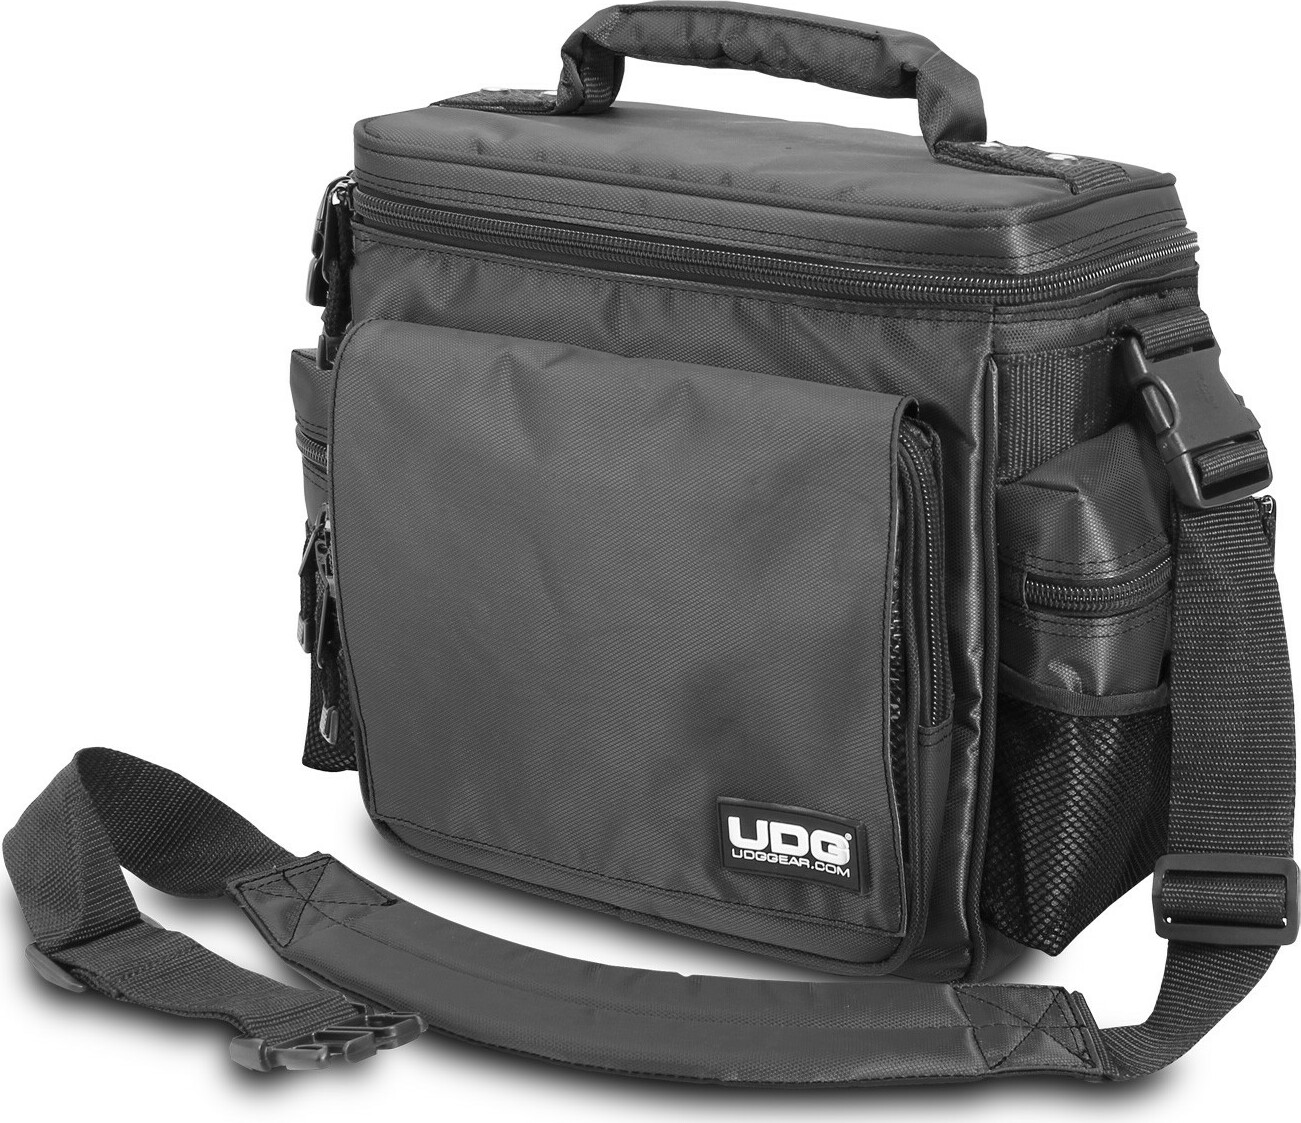 Udg Ultimate Slingbag Black Mk2 (without Cd Wallet 24) - Trolley DJ - Main picture